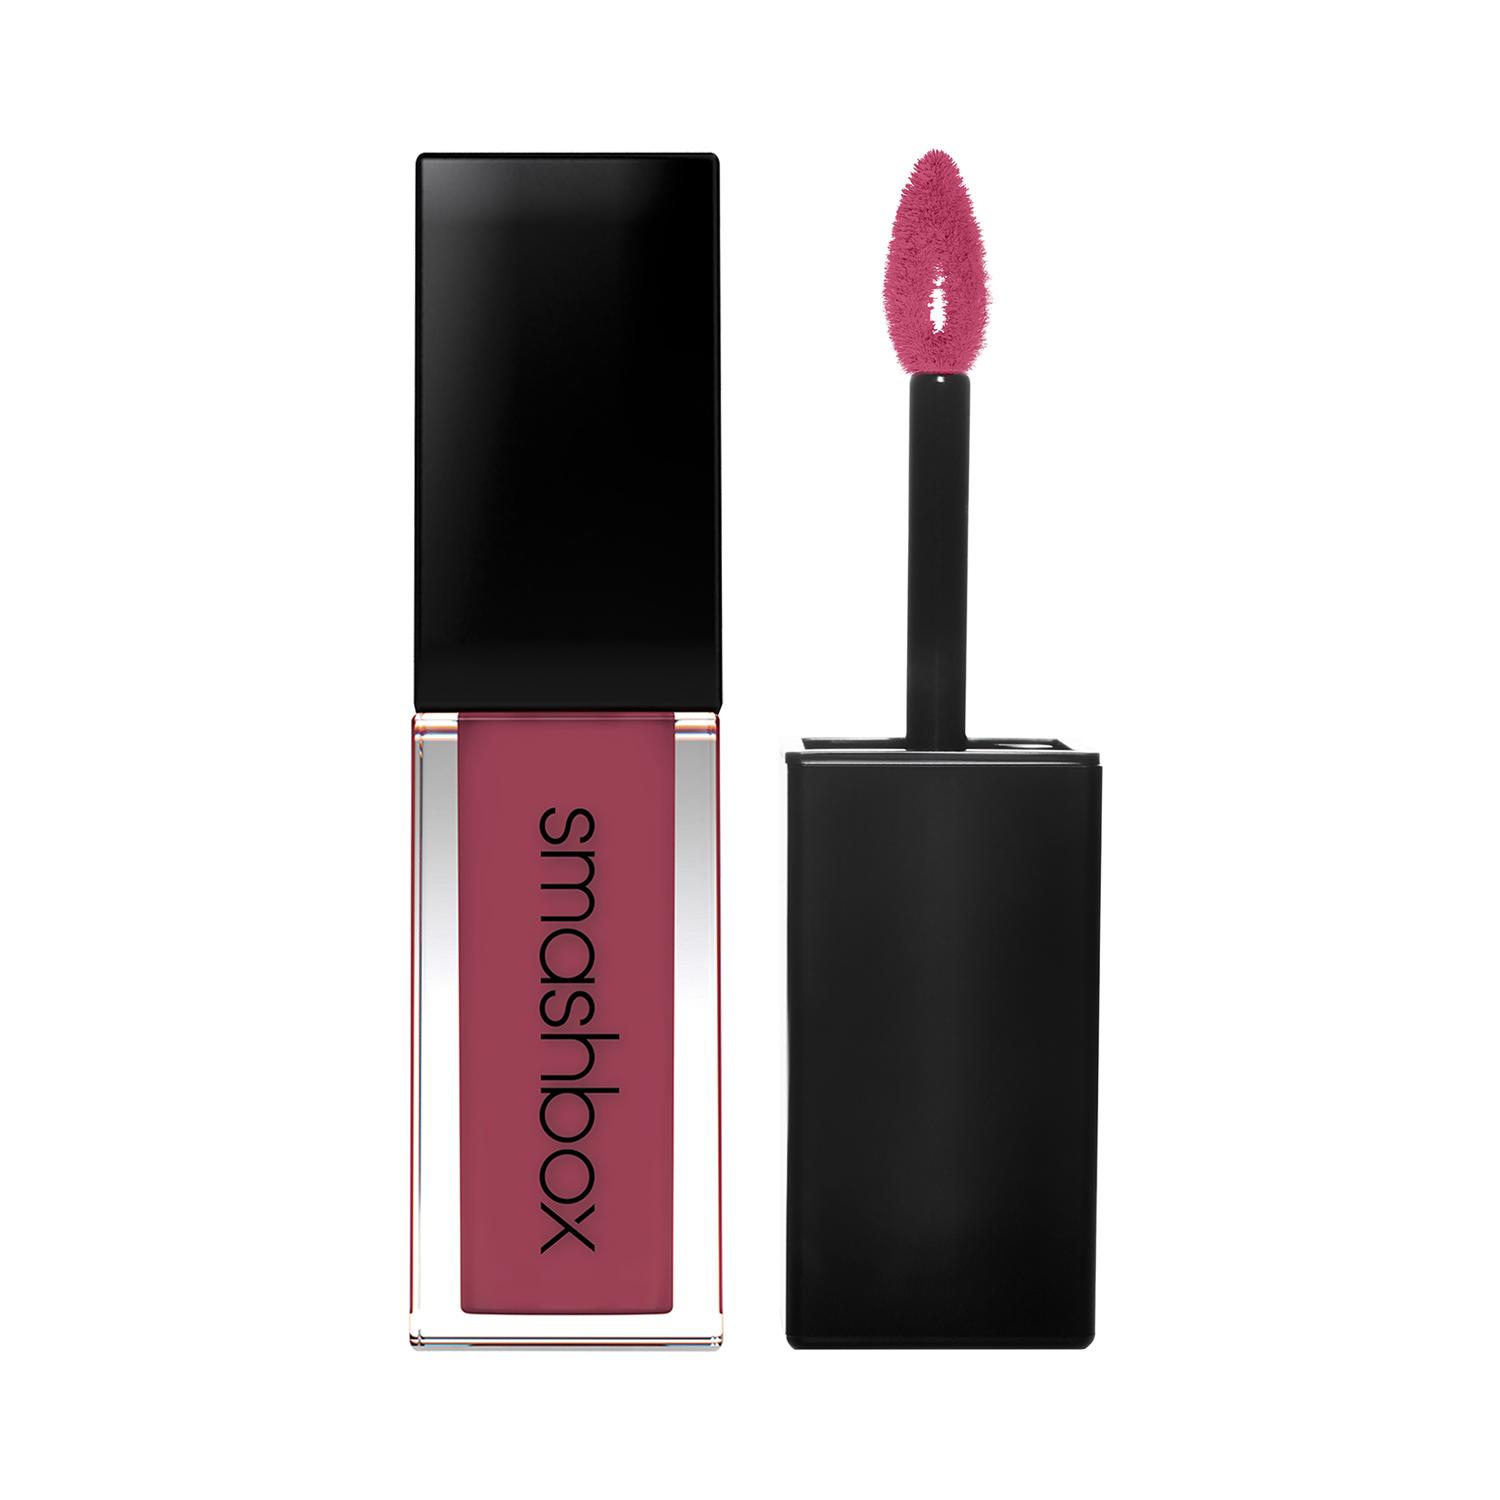 Smashbox | Smashbox Always On Matte Liquid Lipstick - Big Spender (4ml)